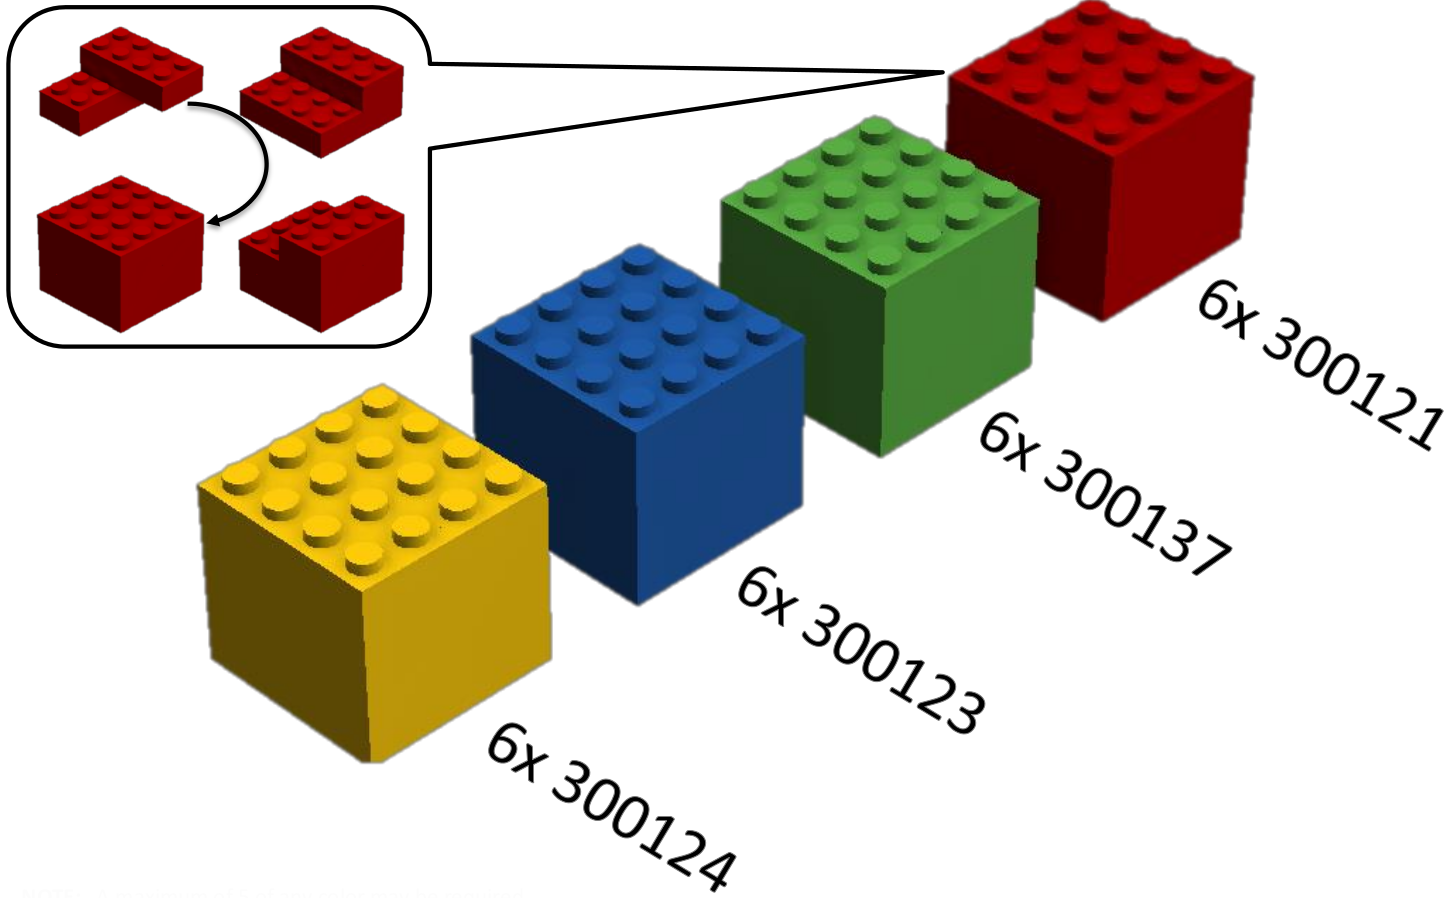 6. Pályaelemek 6.1. Kockák 6.1.1 Egy kocka hat (6) darab 2x4-es LEGO R elemből áll. 6.1.2 Mind a négy színű kockából legfeljebb öt (5) darabra lehet szükség a versenyasztalon.